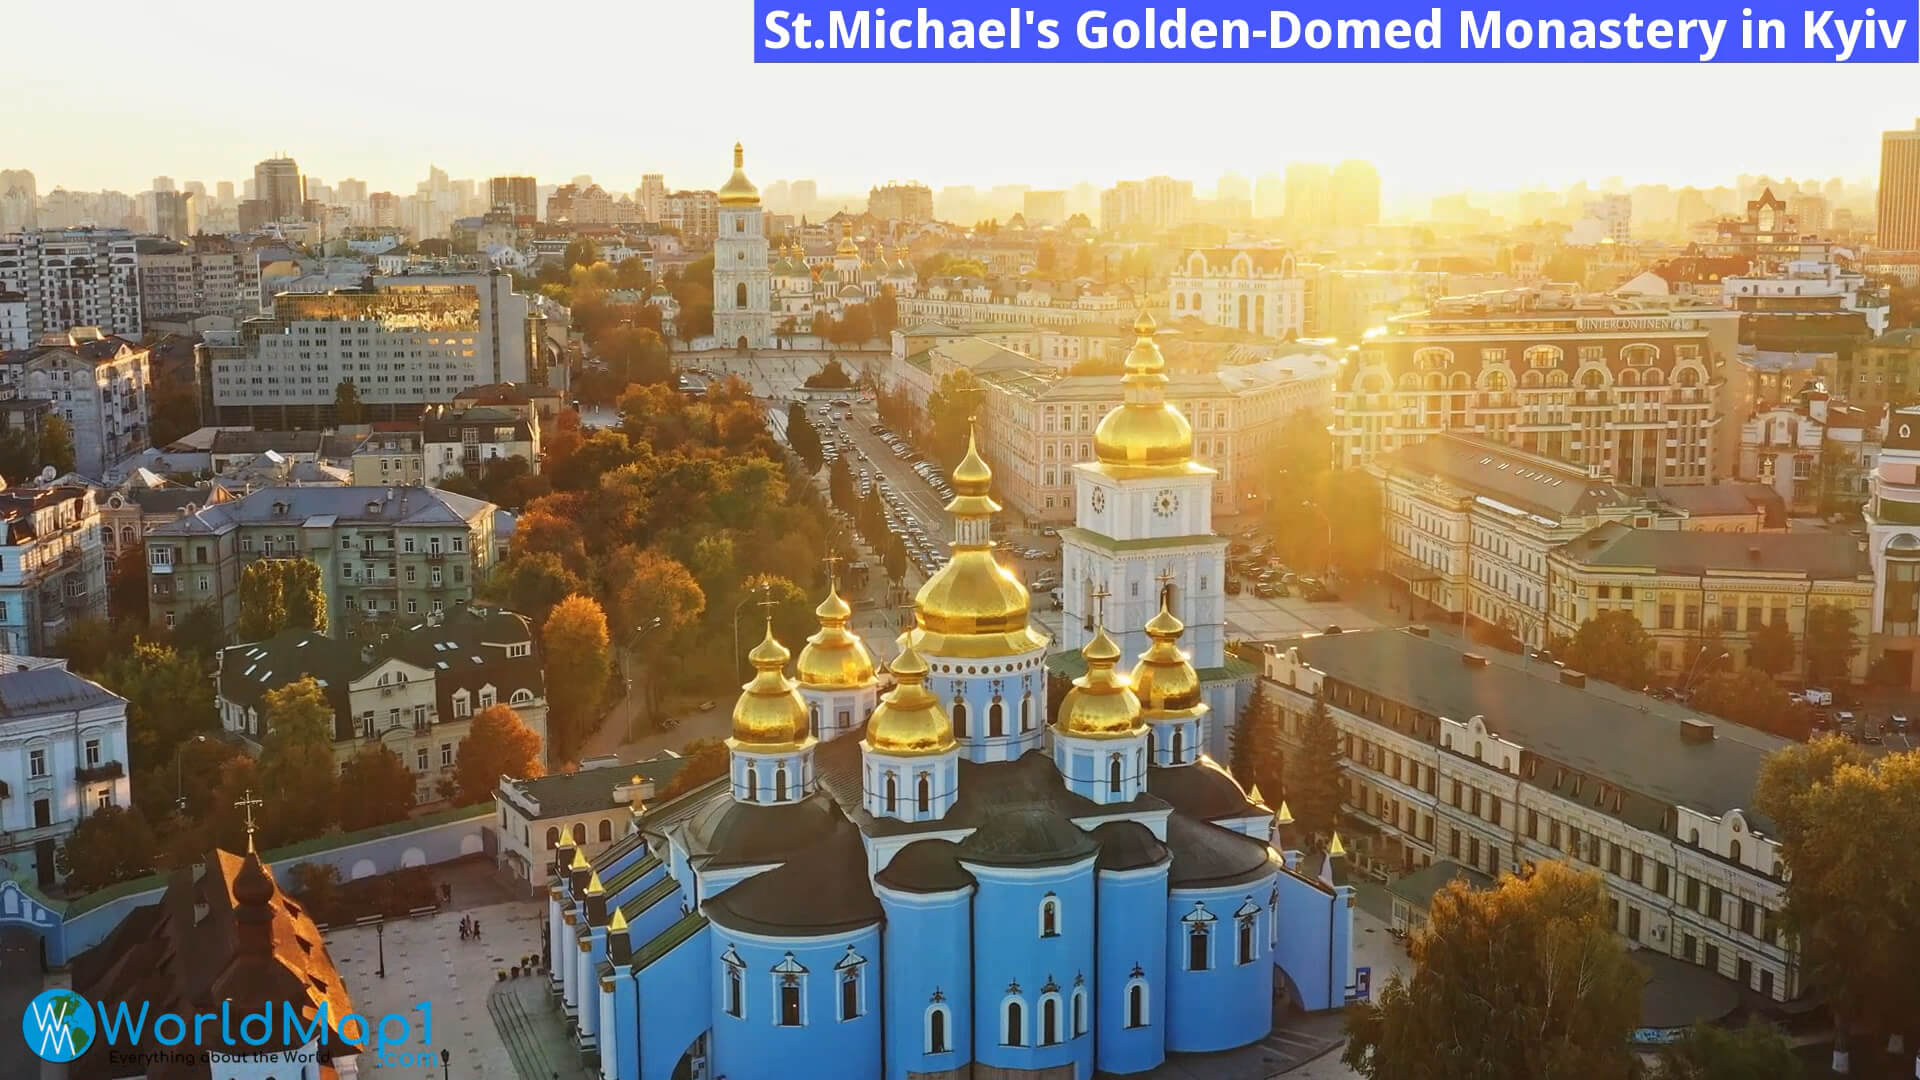 St Michael's Golden Gewölbtes Kloster in Kiew